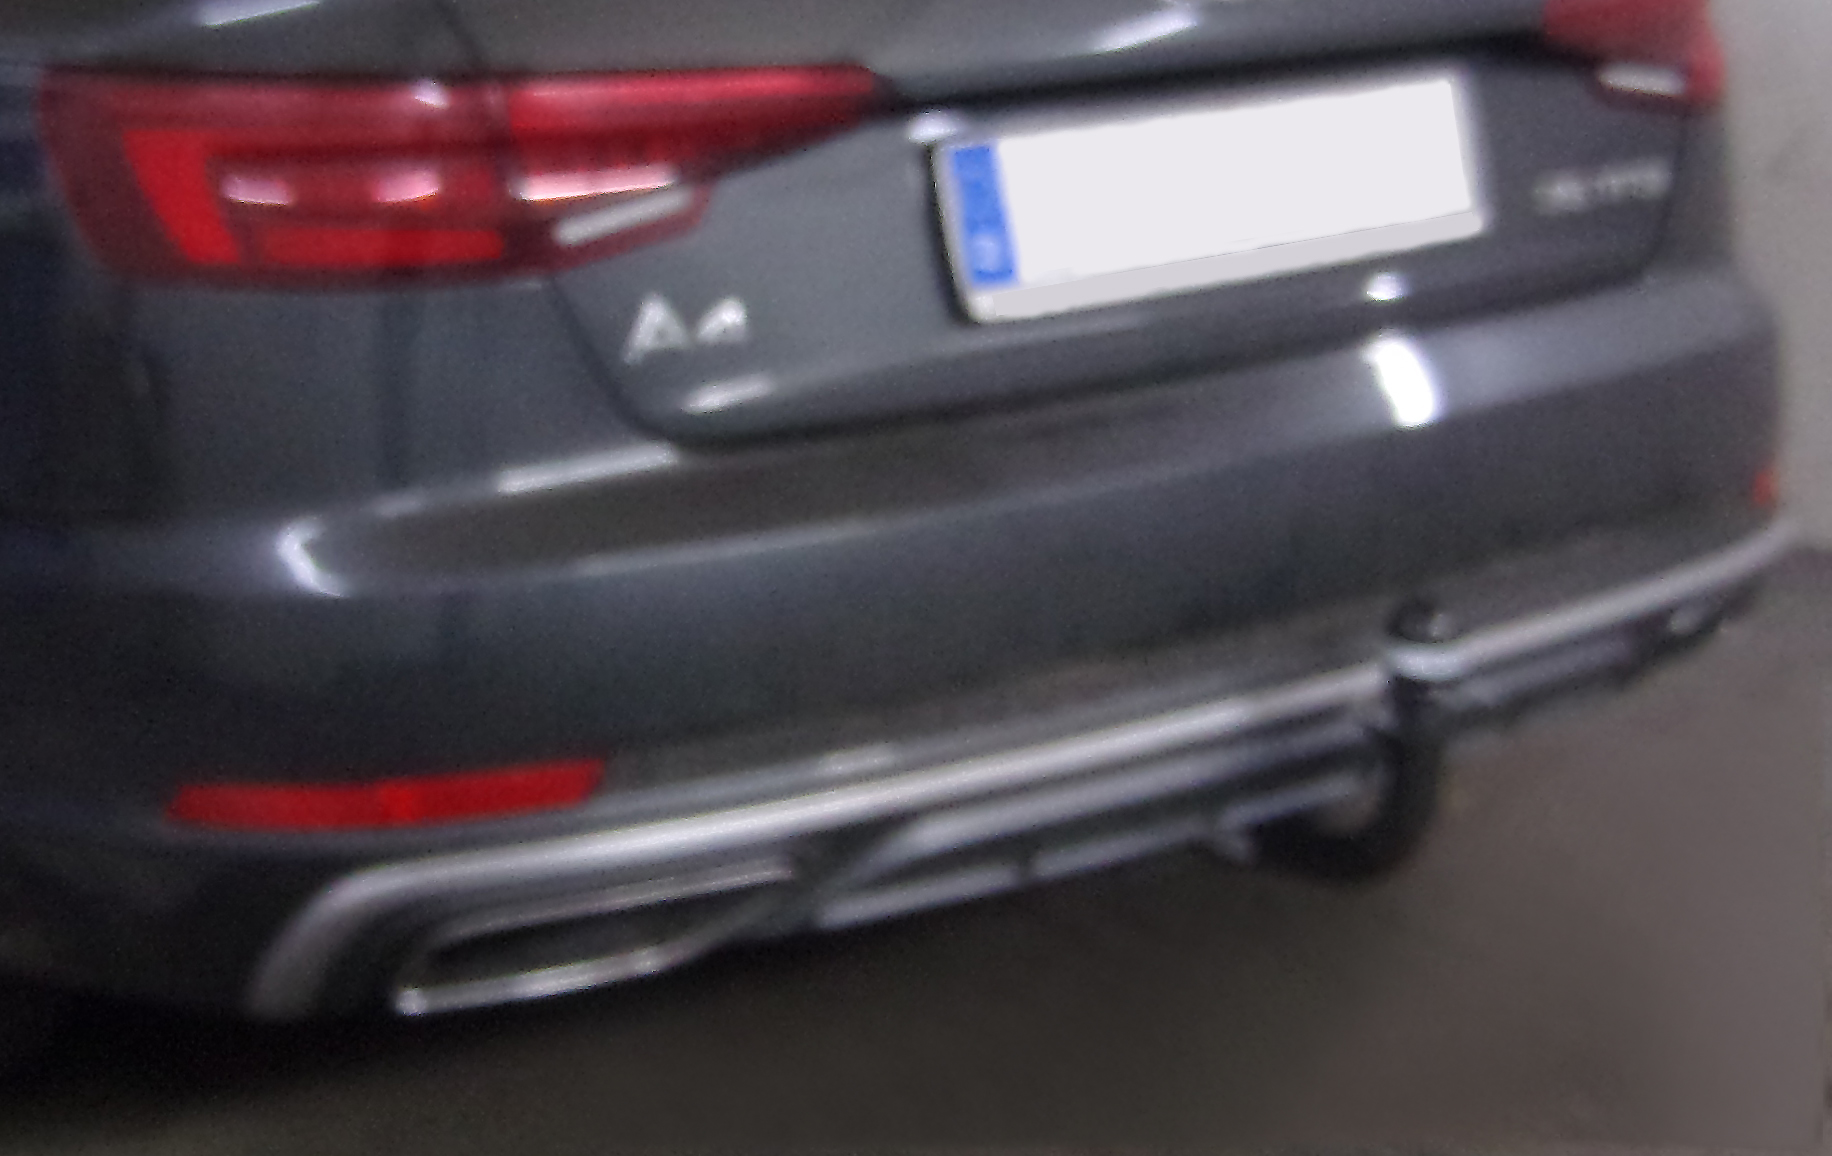 Anhängerkupplung für Audi-A4 Limousine nicht Quattro, nicht S4, speziell S-Line, Baureihe 2015- V-abnehmbar